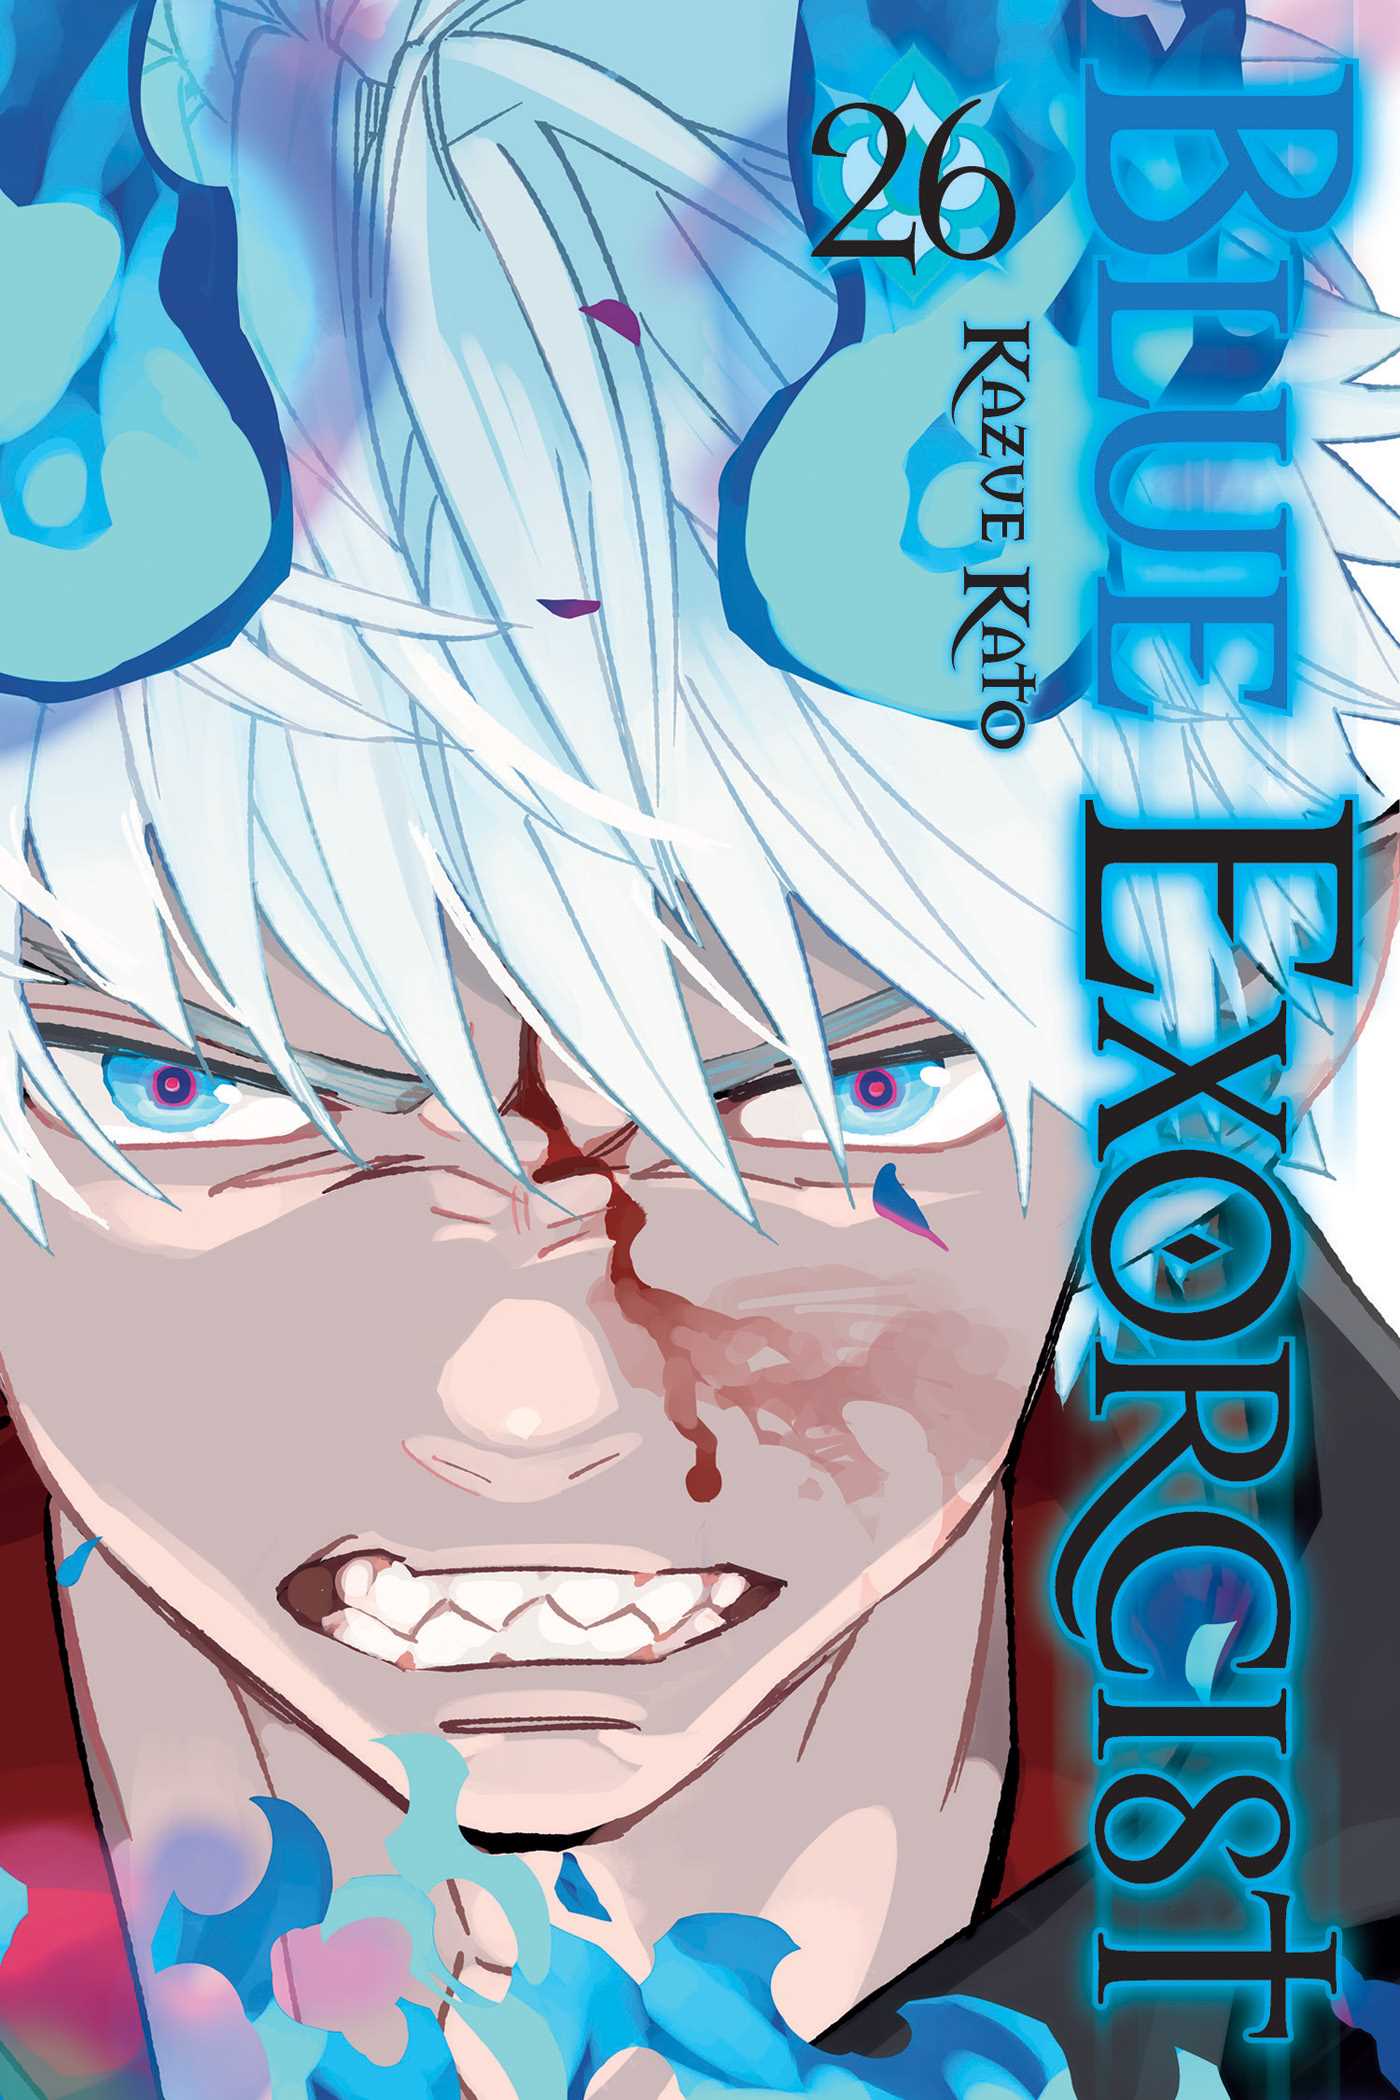 Blue Exorcist, Manga Vol. 26 Super Anime Store 